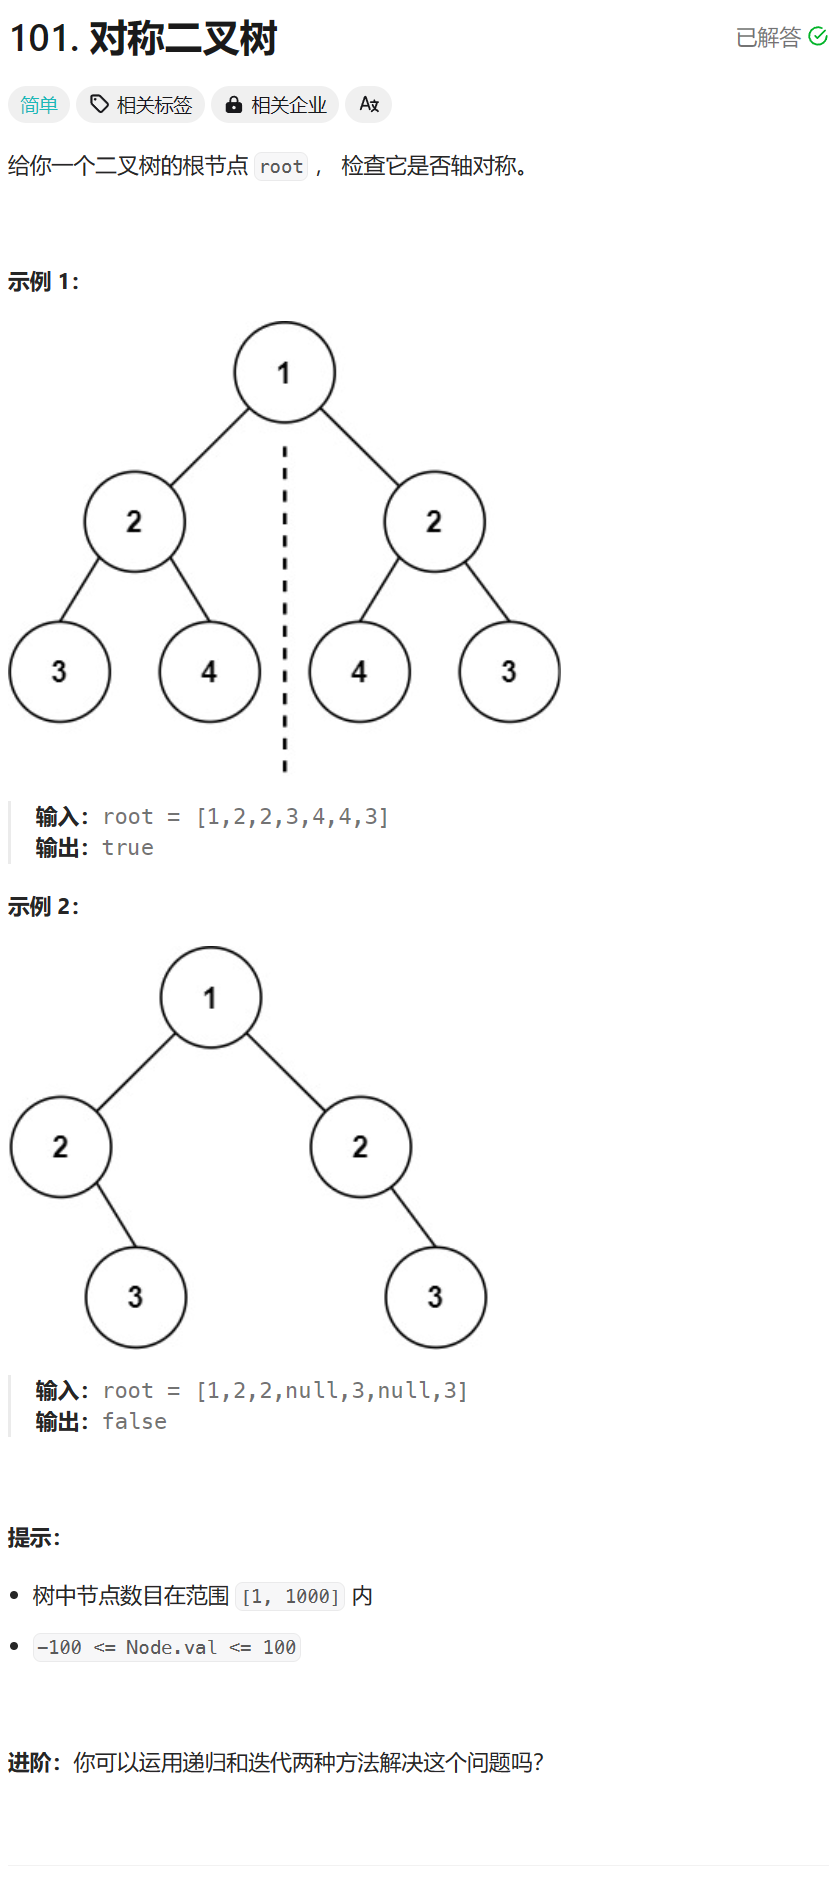 每日两题 / 101. 对称二叉树 && 230. 二叉搜索树中第K小的元素（LeetCode热题100）